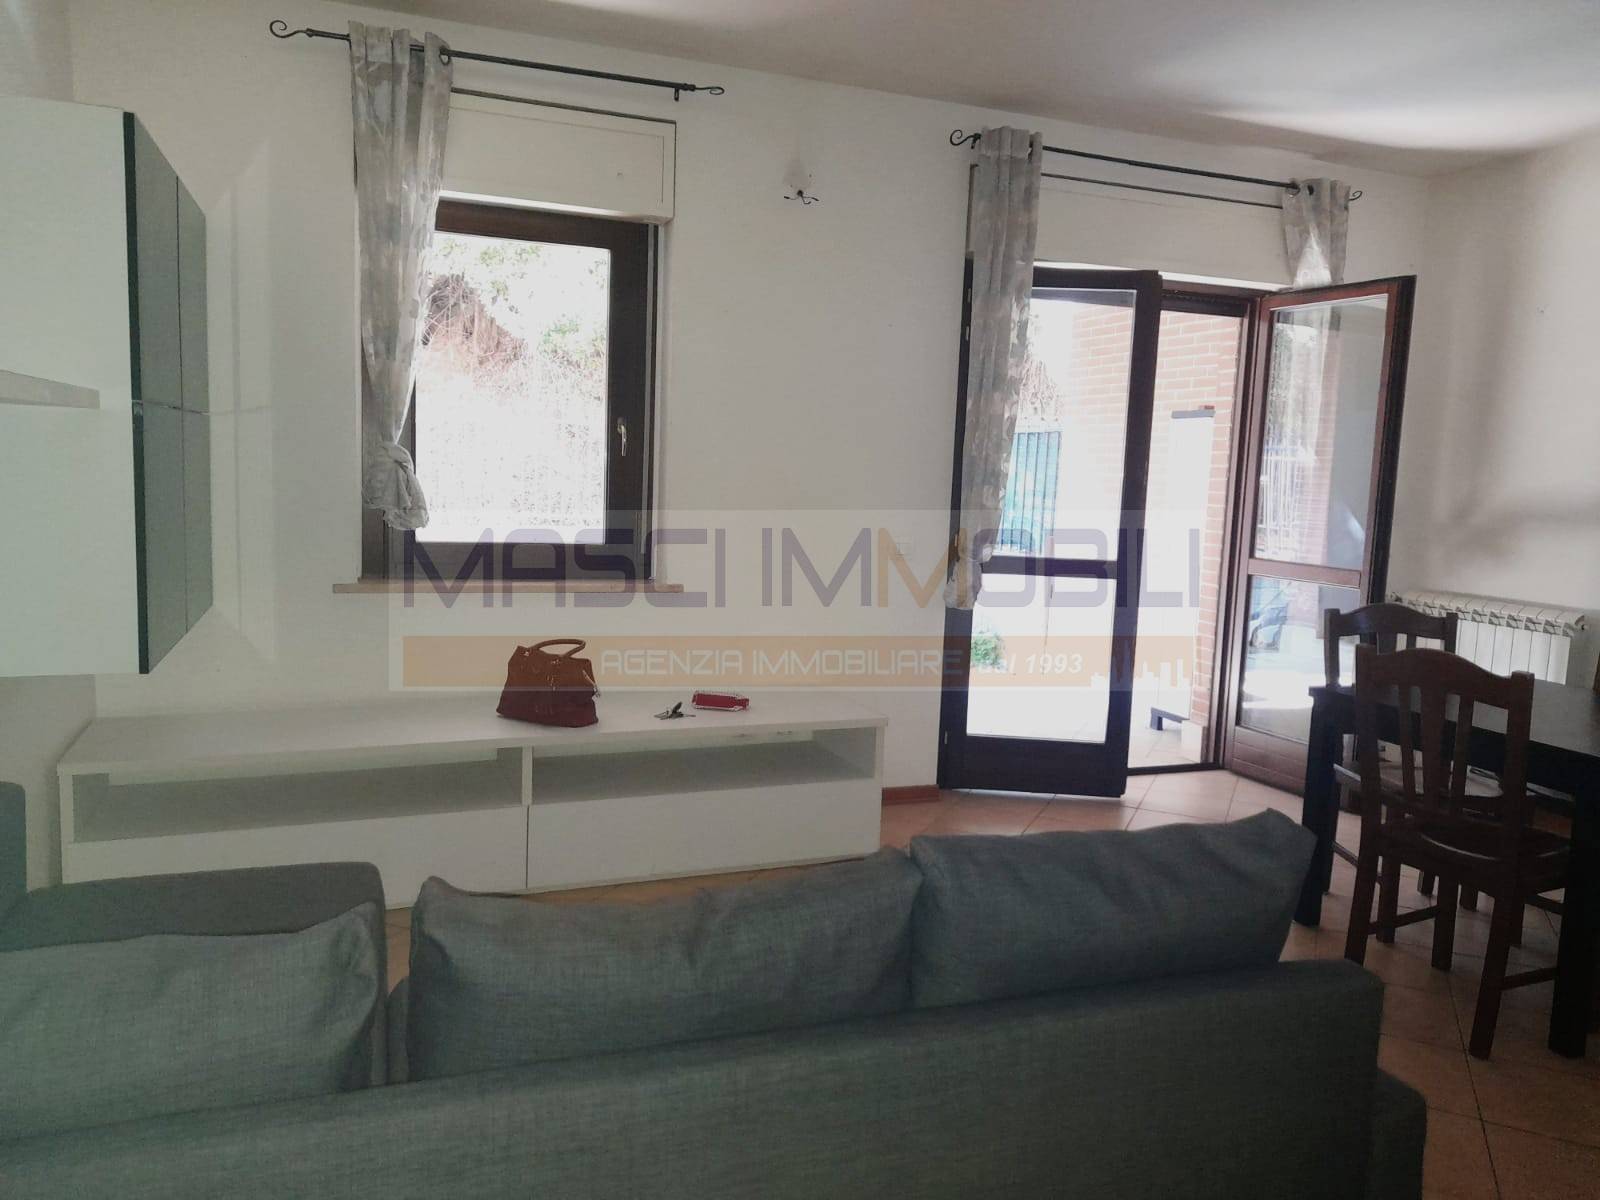 Appartamento in vendita a Fiano Romano, 1 locali, prezzo € 69.000 | CambioCasa.it